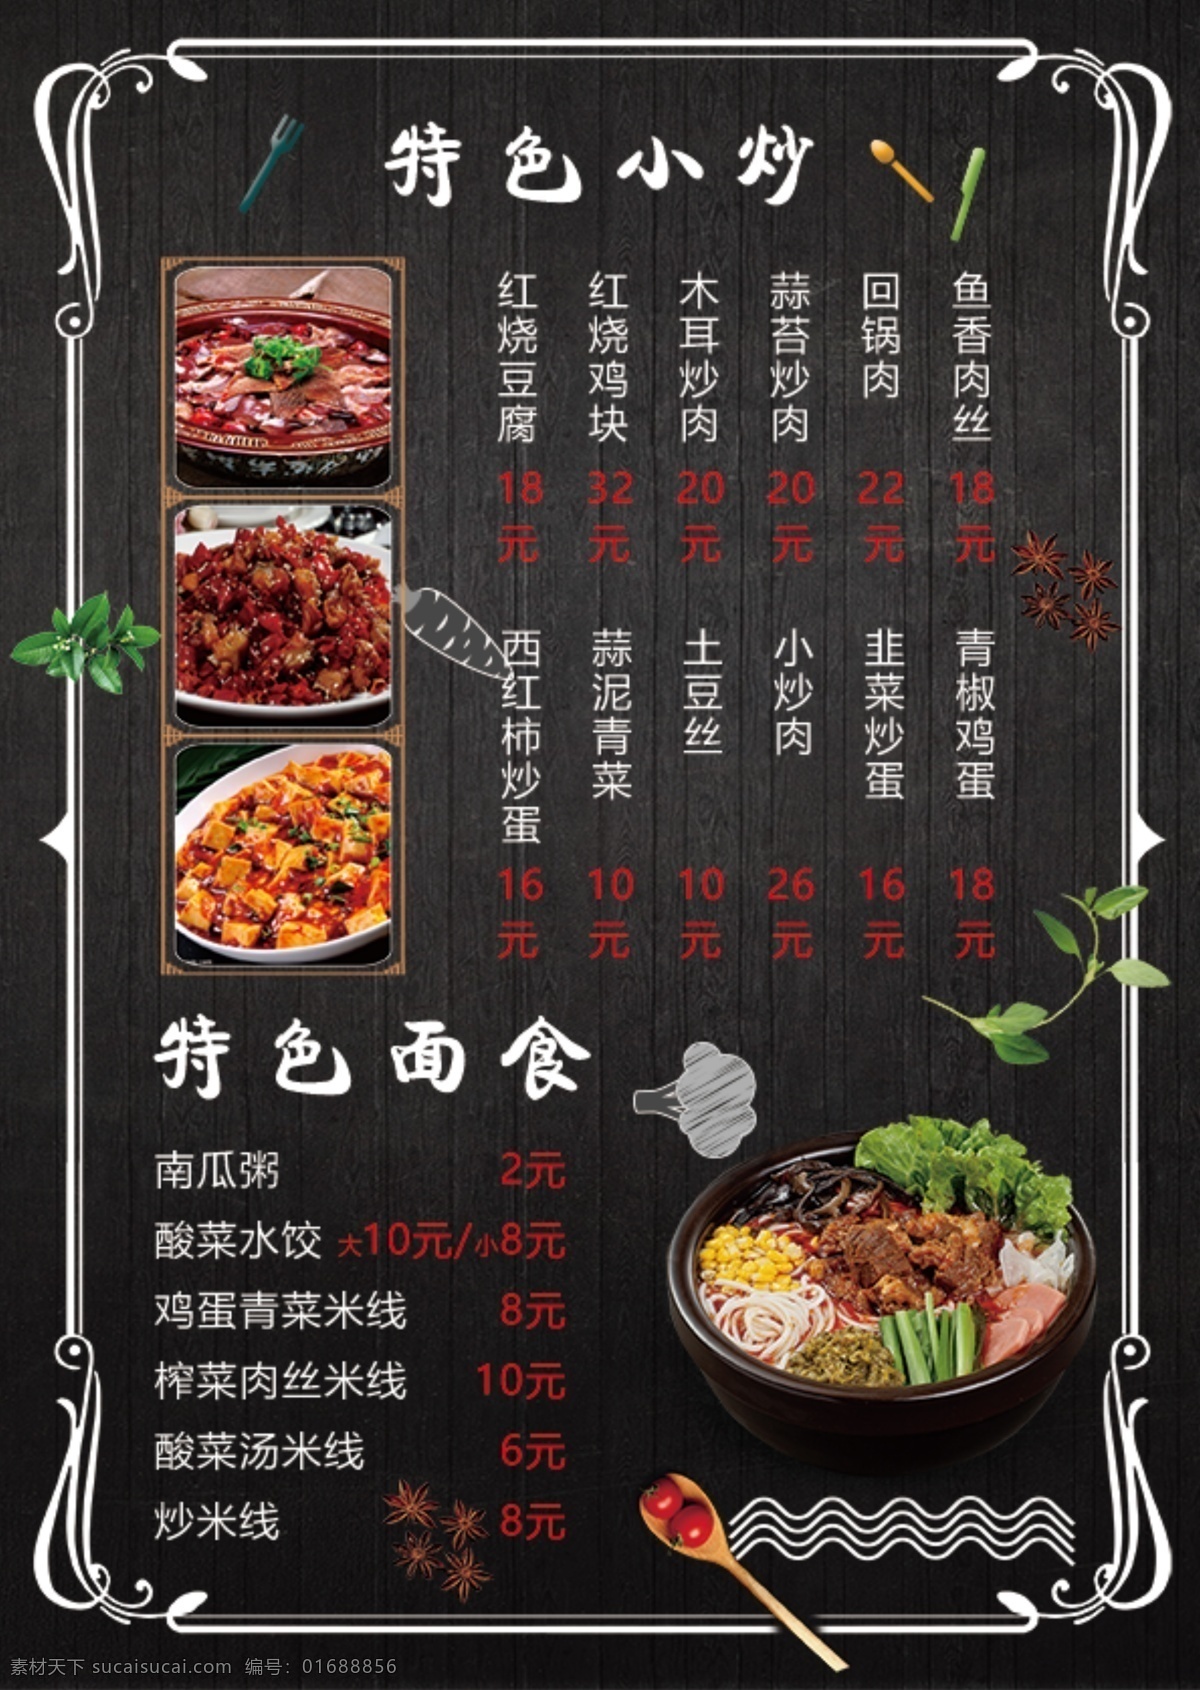 特色小炒 菜单 菜谱 简约 黑色 面食 面条 炒菜菜单 系列 分层